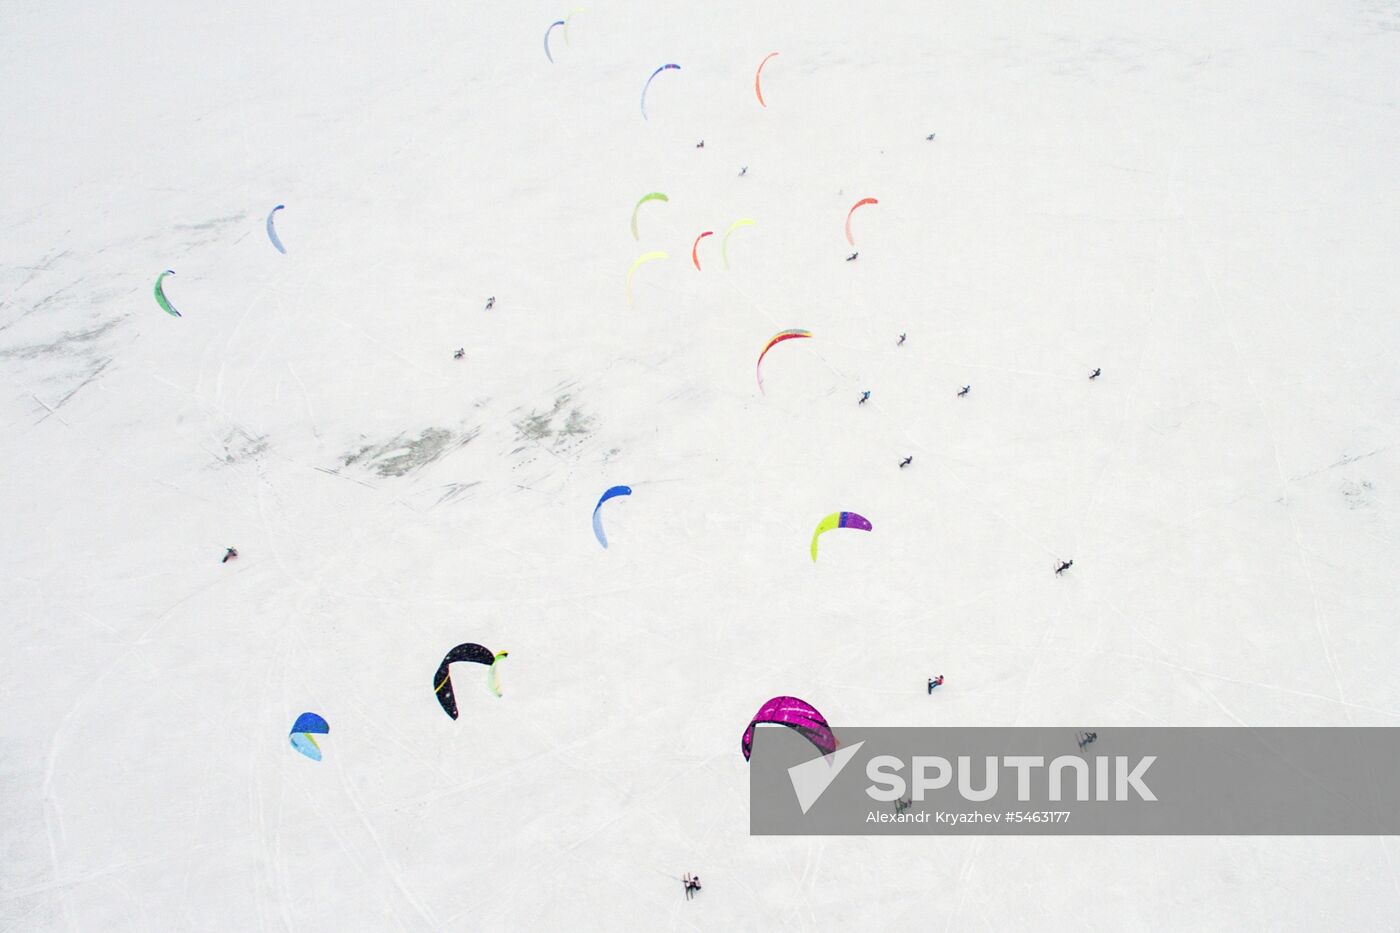 Winter sailing contests in Novosibirsk Region